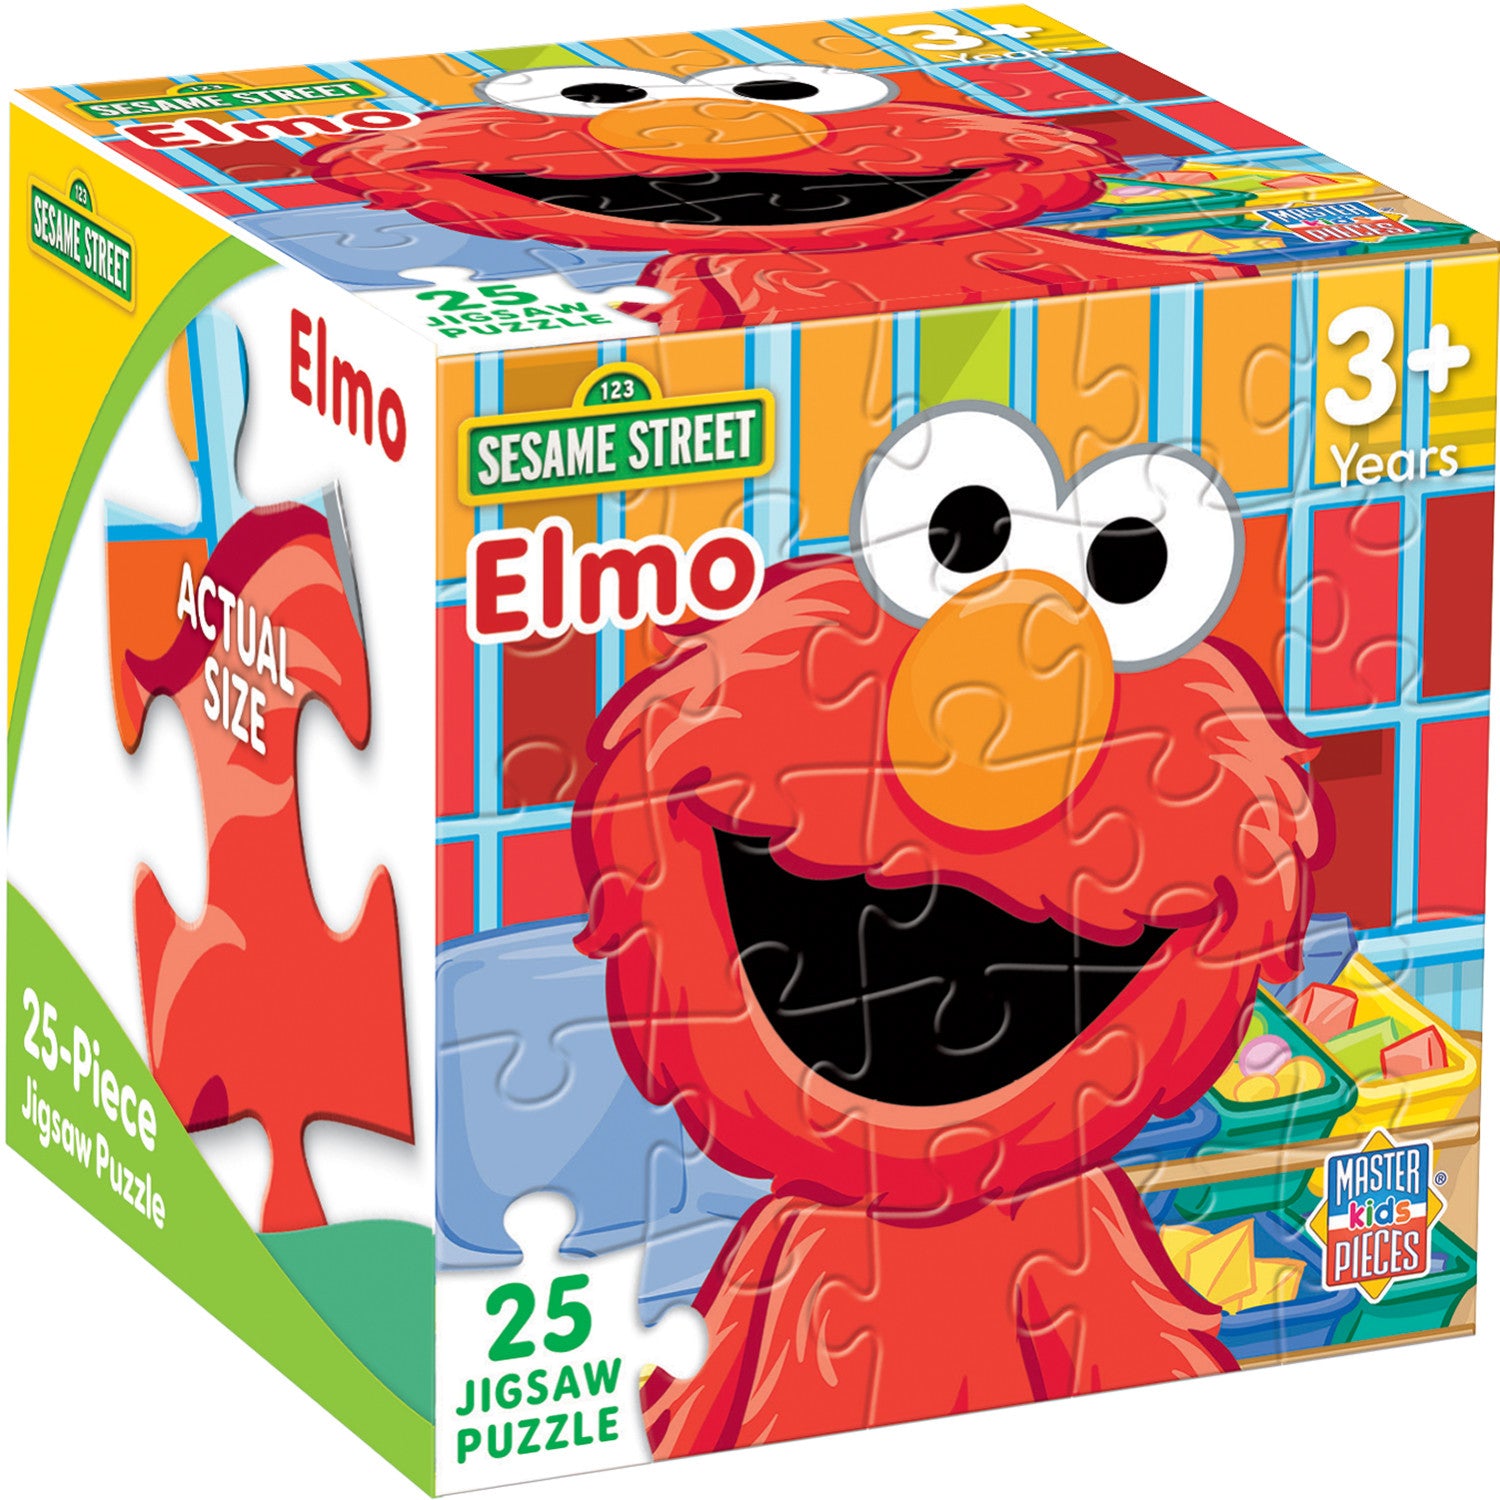 Sesame Street - Elmo 25 Piece Jigsaw Puzzle